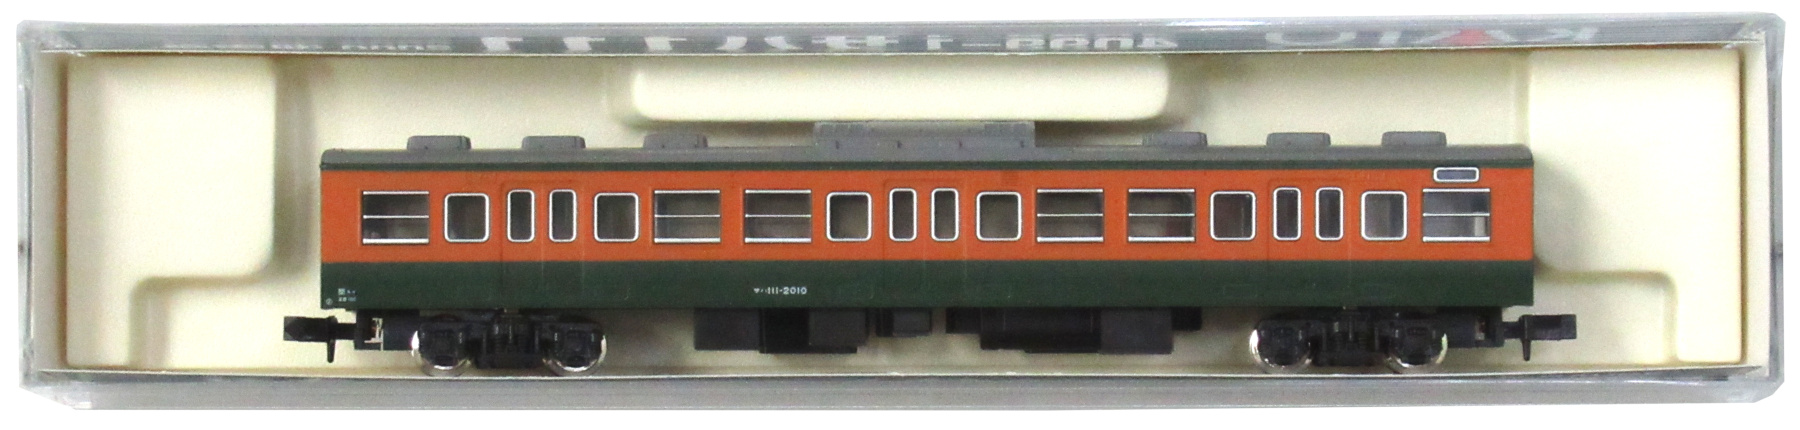 公式]鉄道模型(JR・国鉄 形式別(N)、近郊形車両、113系)カテゴリ 